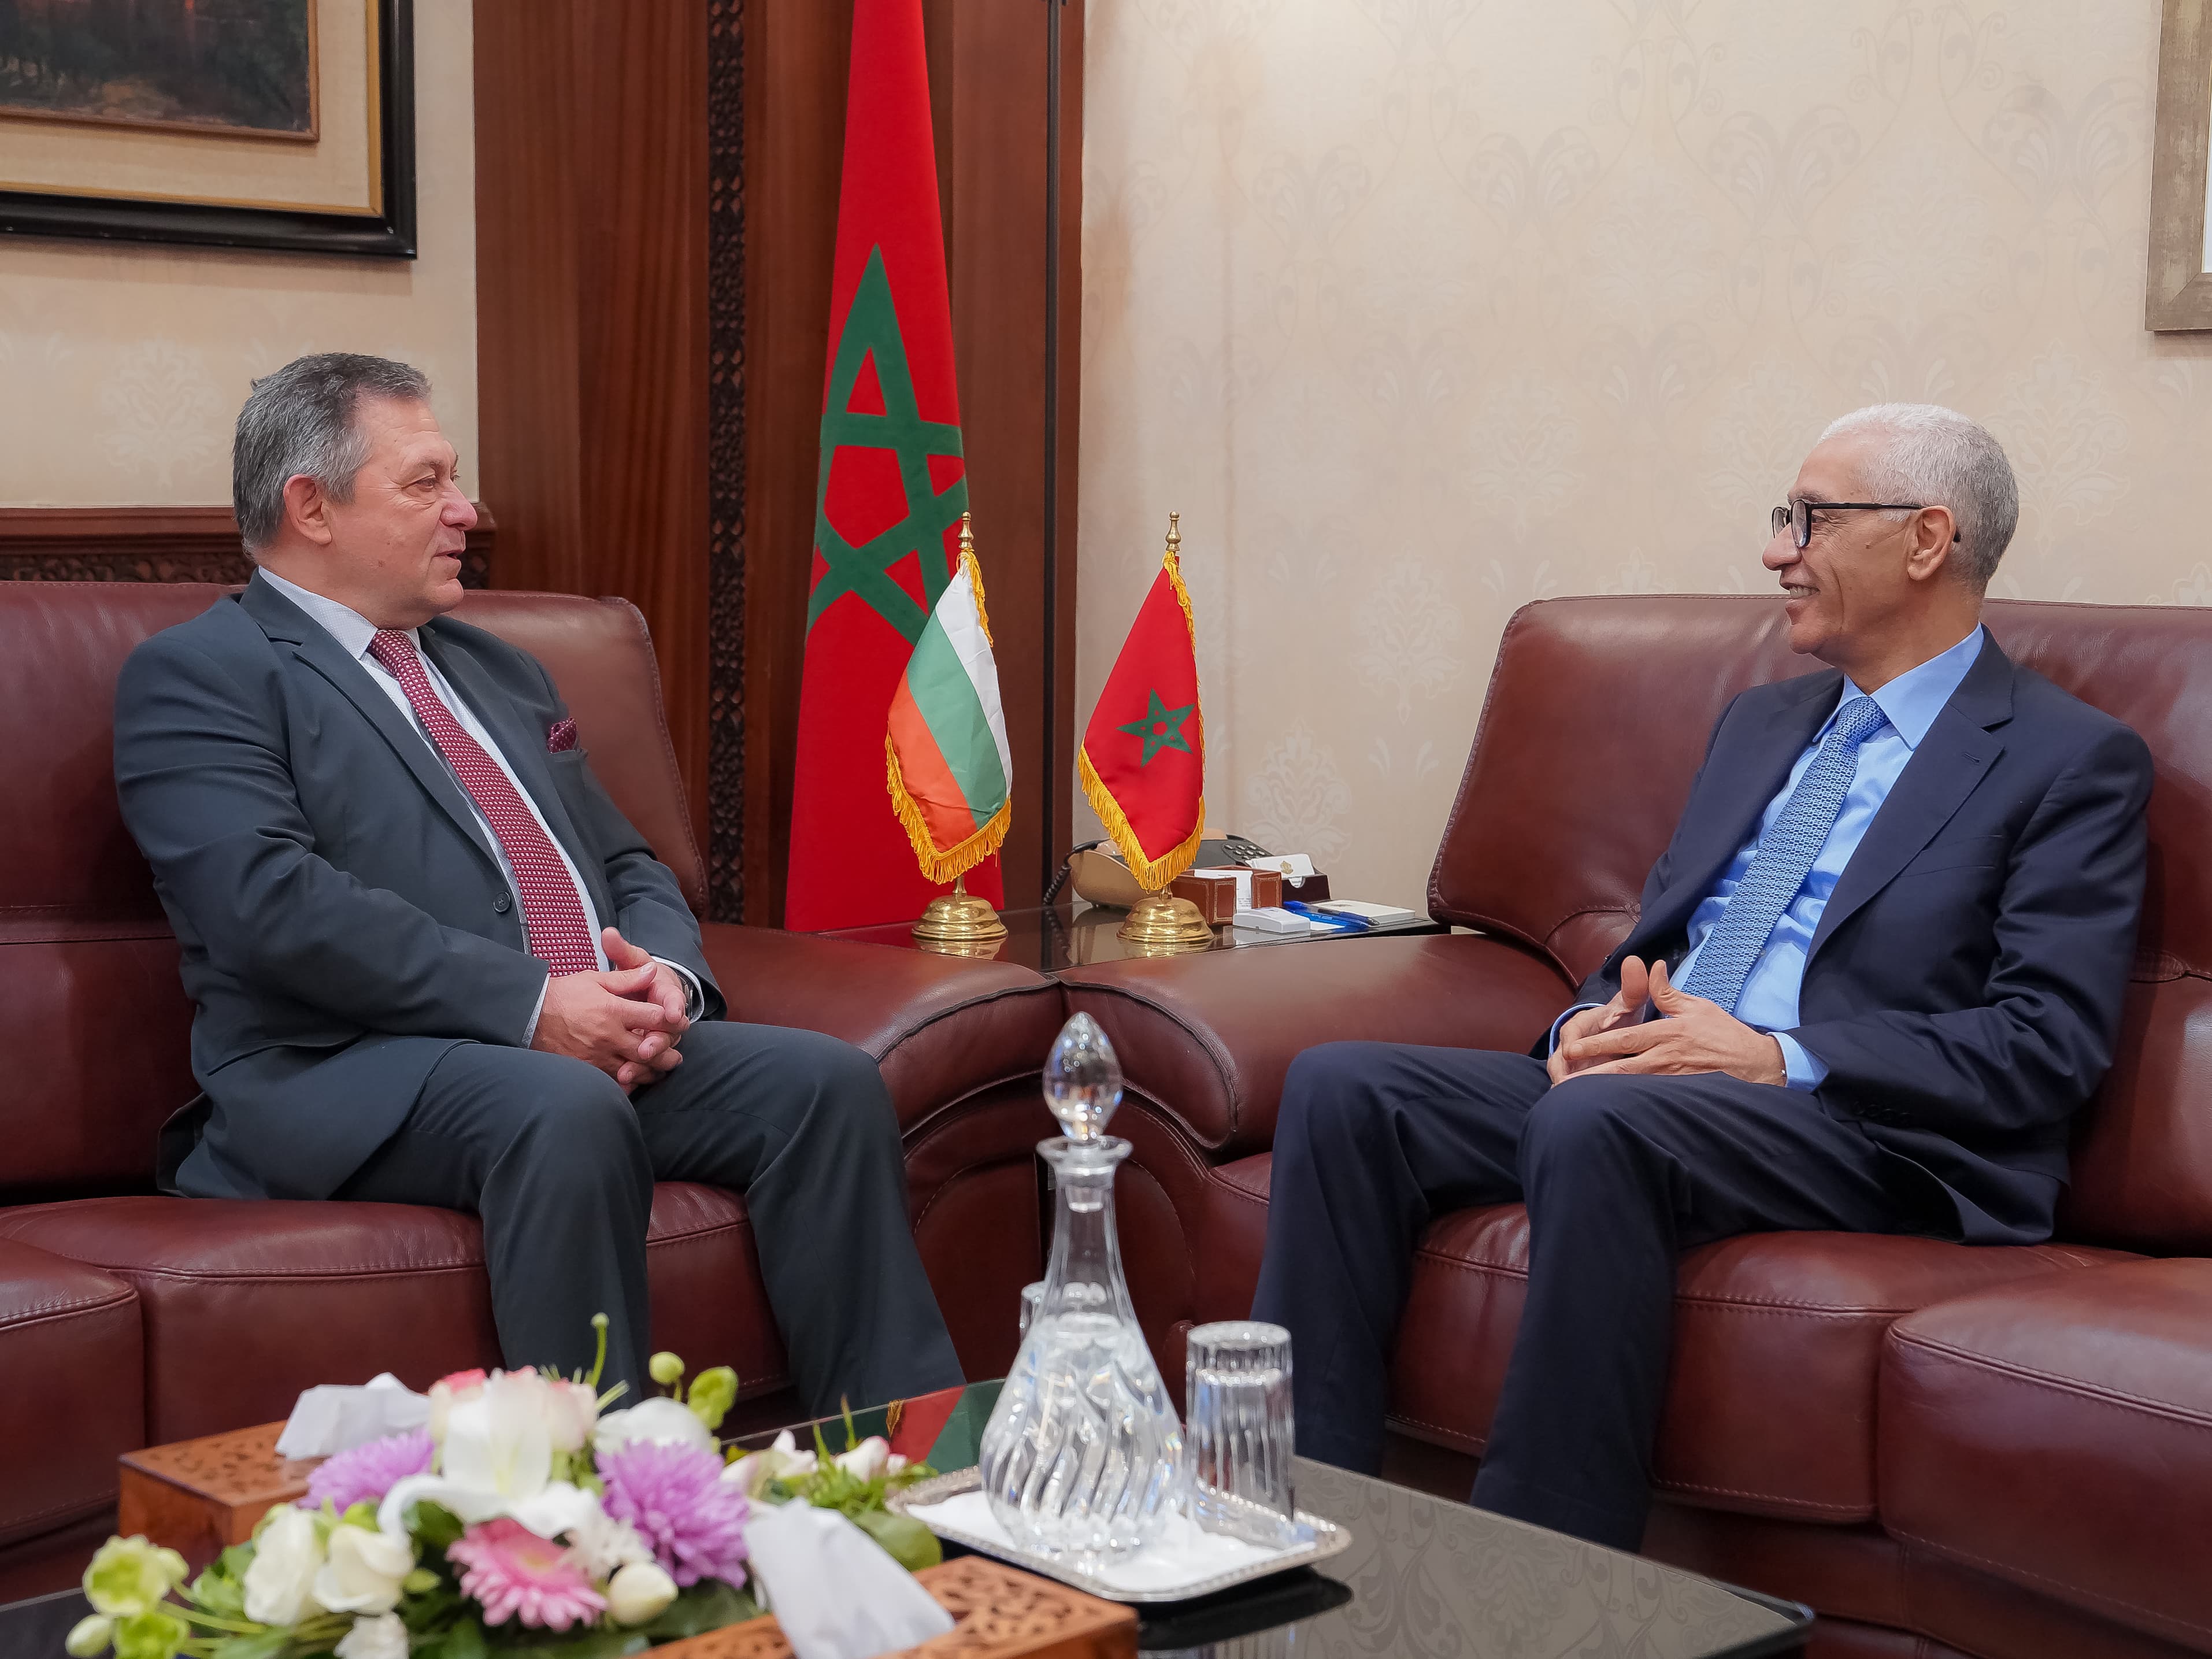 Посланикът на България в Рабат се срещна с председателя на Камарата на представителите на Кралство Мароко